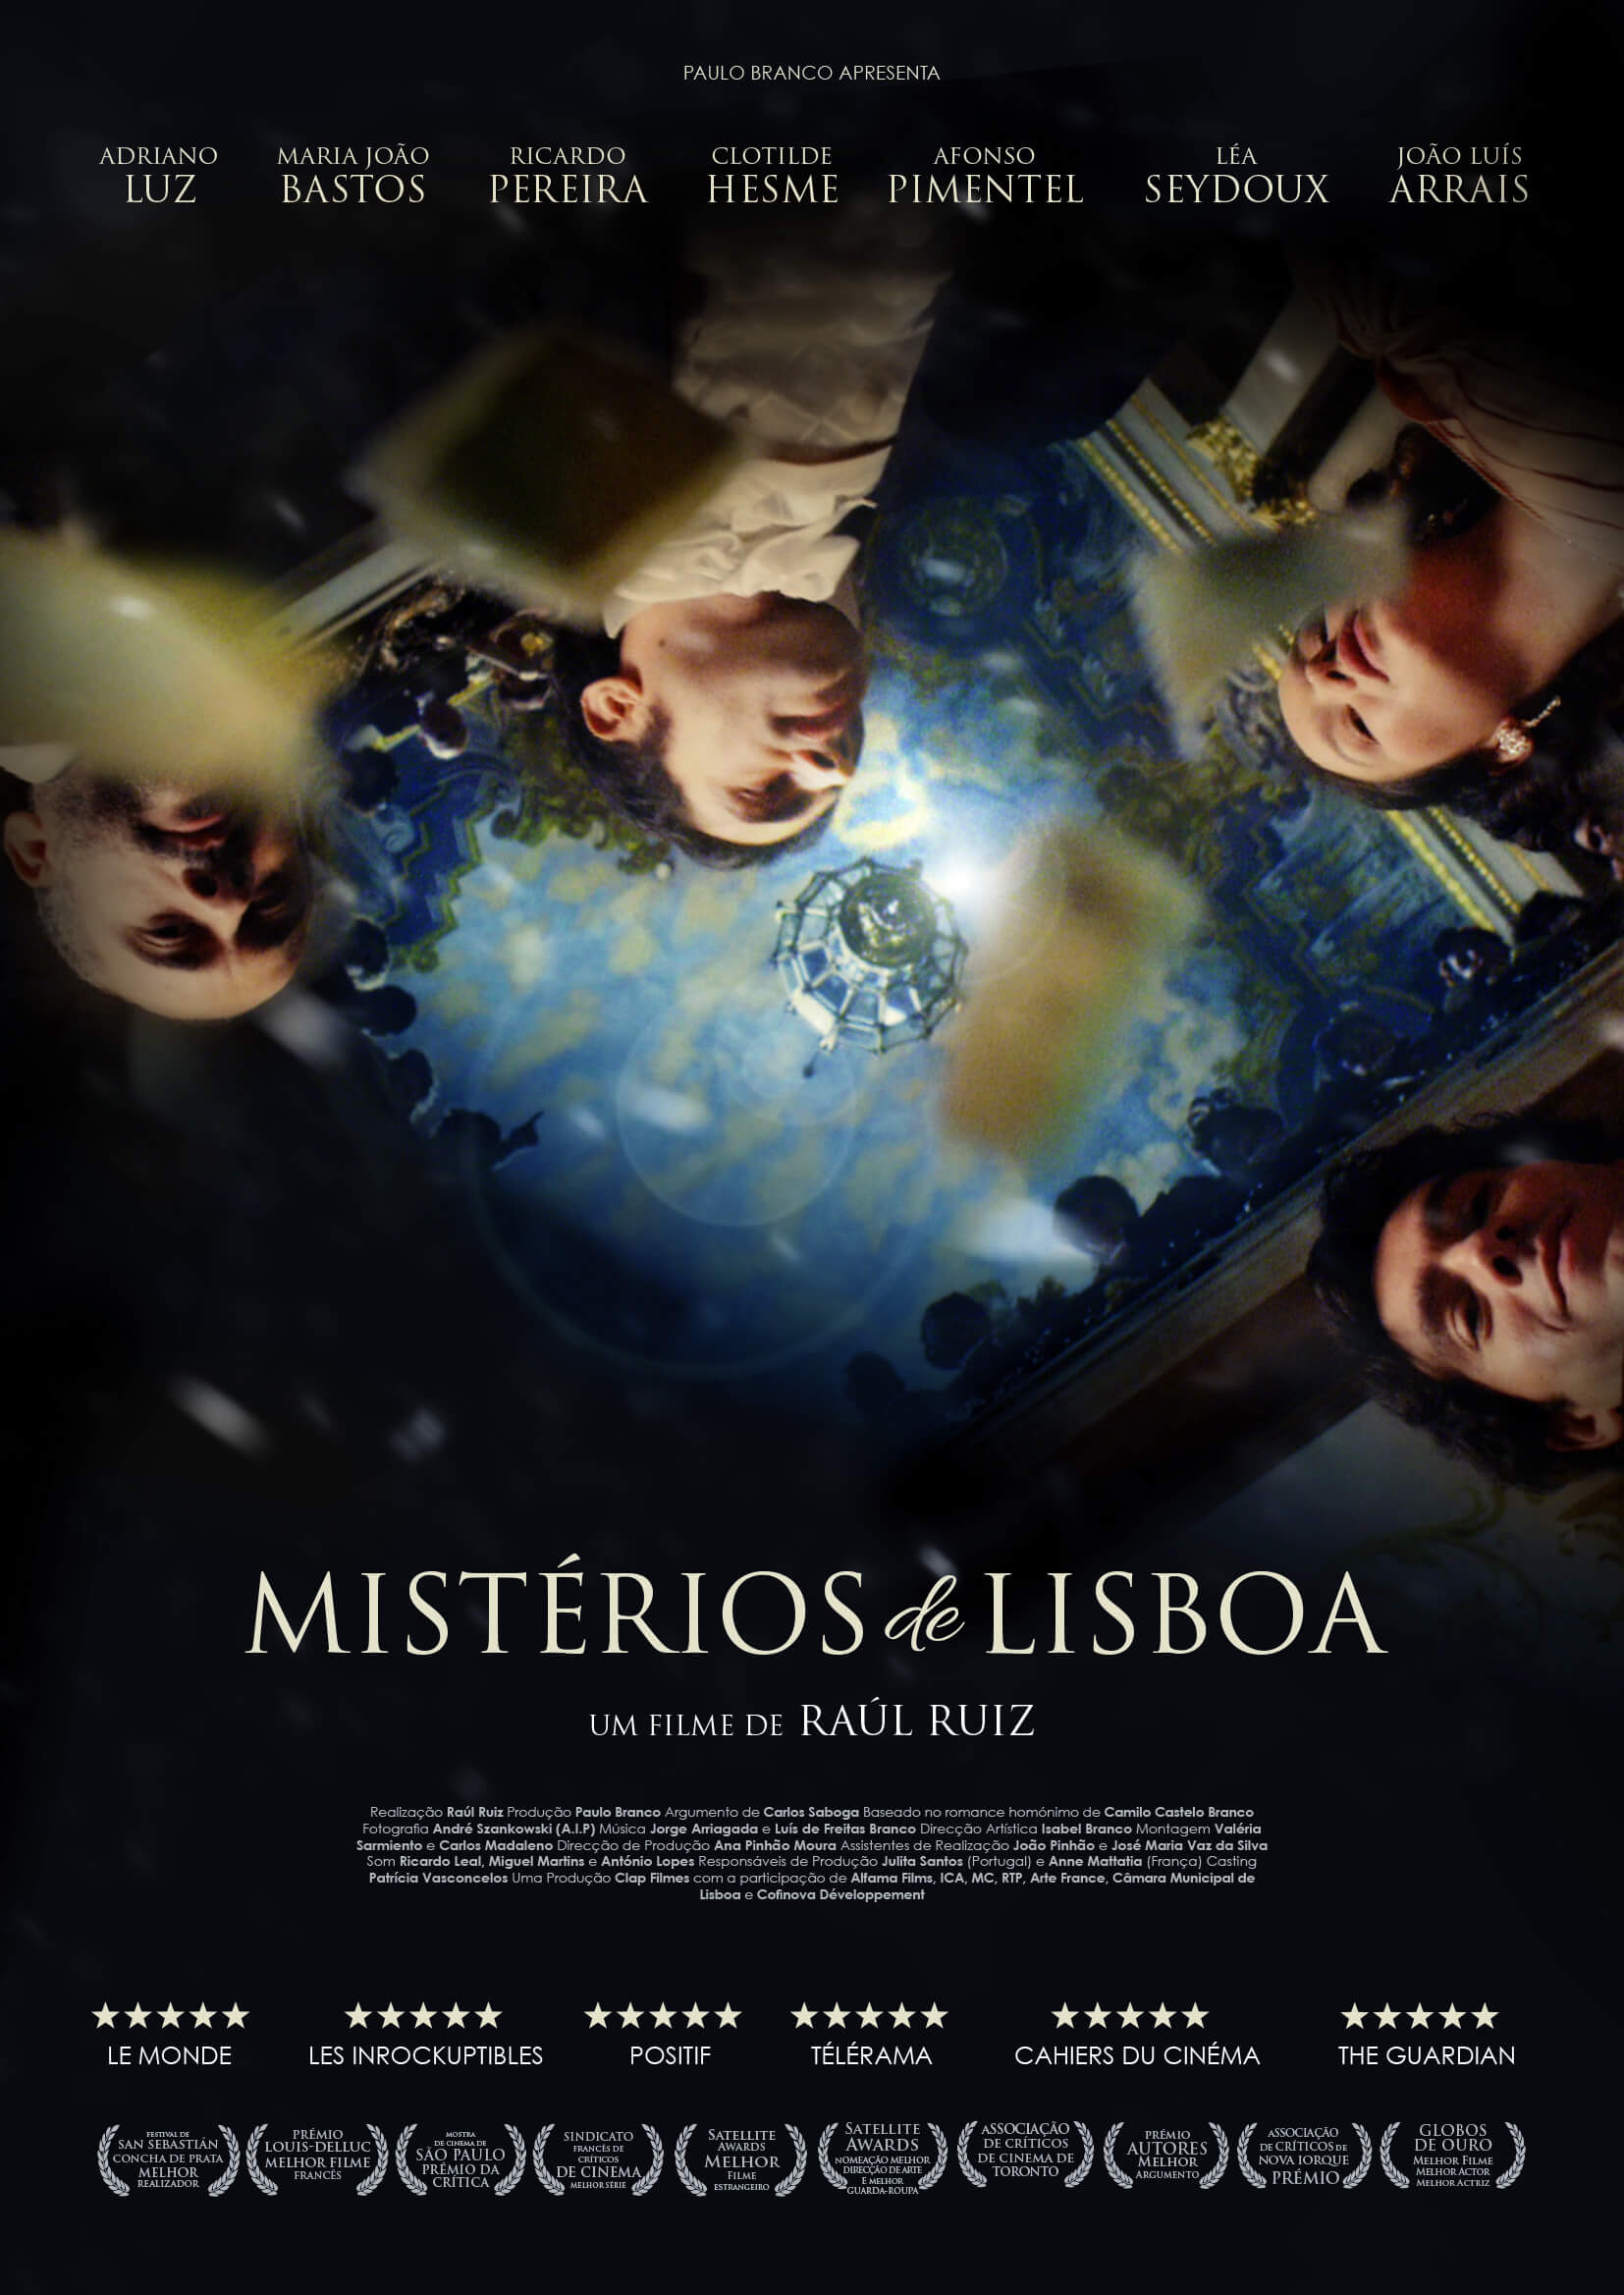 Mistérios de Lisboa (Mysteries of Lisbon)